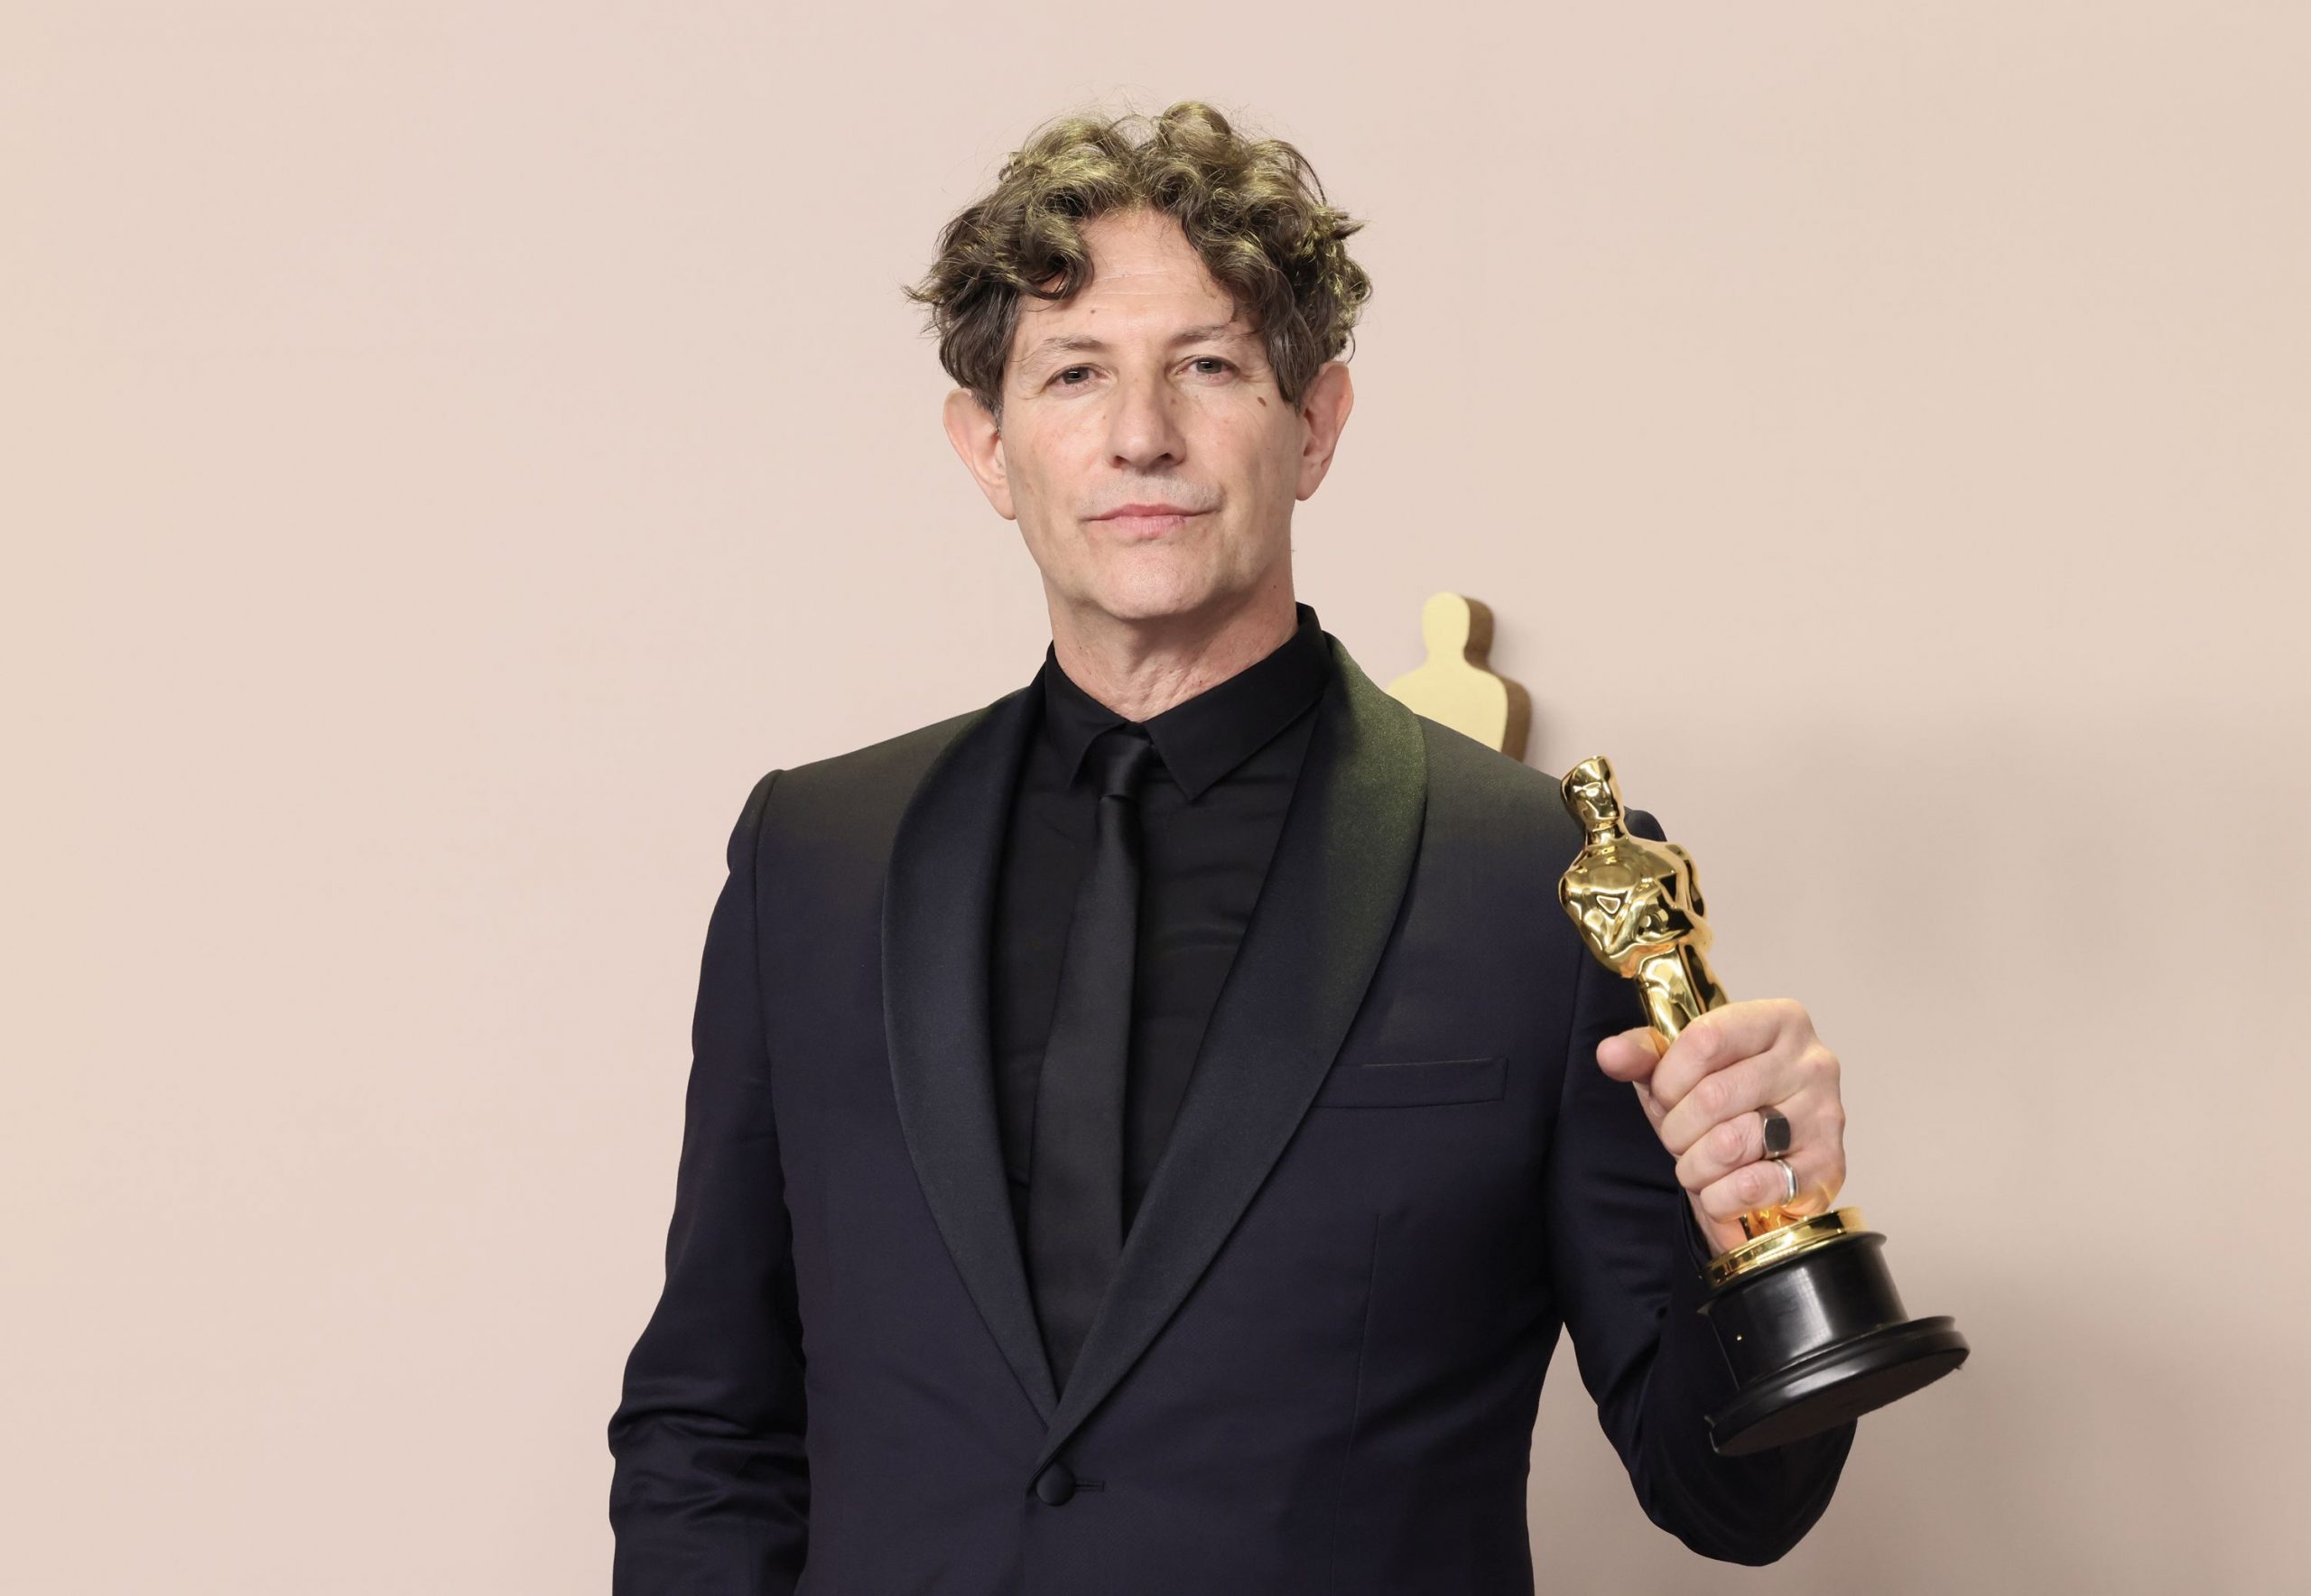 Balhé az Oscar körül – Jonathan Glazer beszéde kiverte a biztosítékot